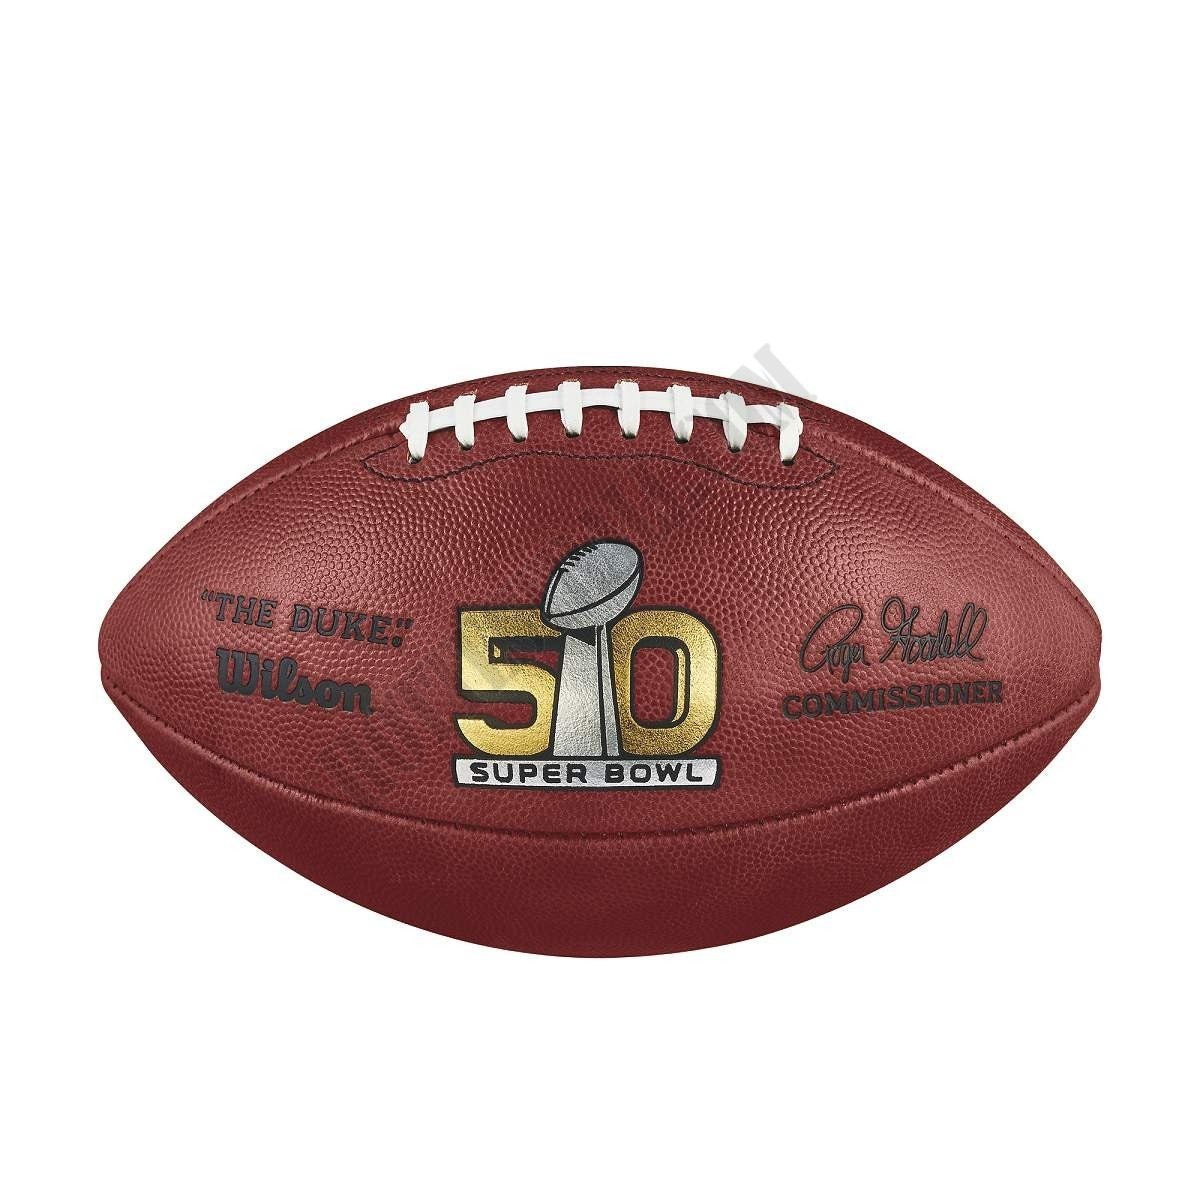 Super Bowl 50 Game Football - Denver Broncos ● Wilson Promotions - Super Bowl 50 Game Football - Denver Broncos ● Wilson Promotions